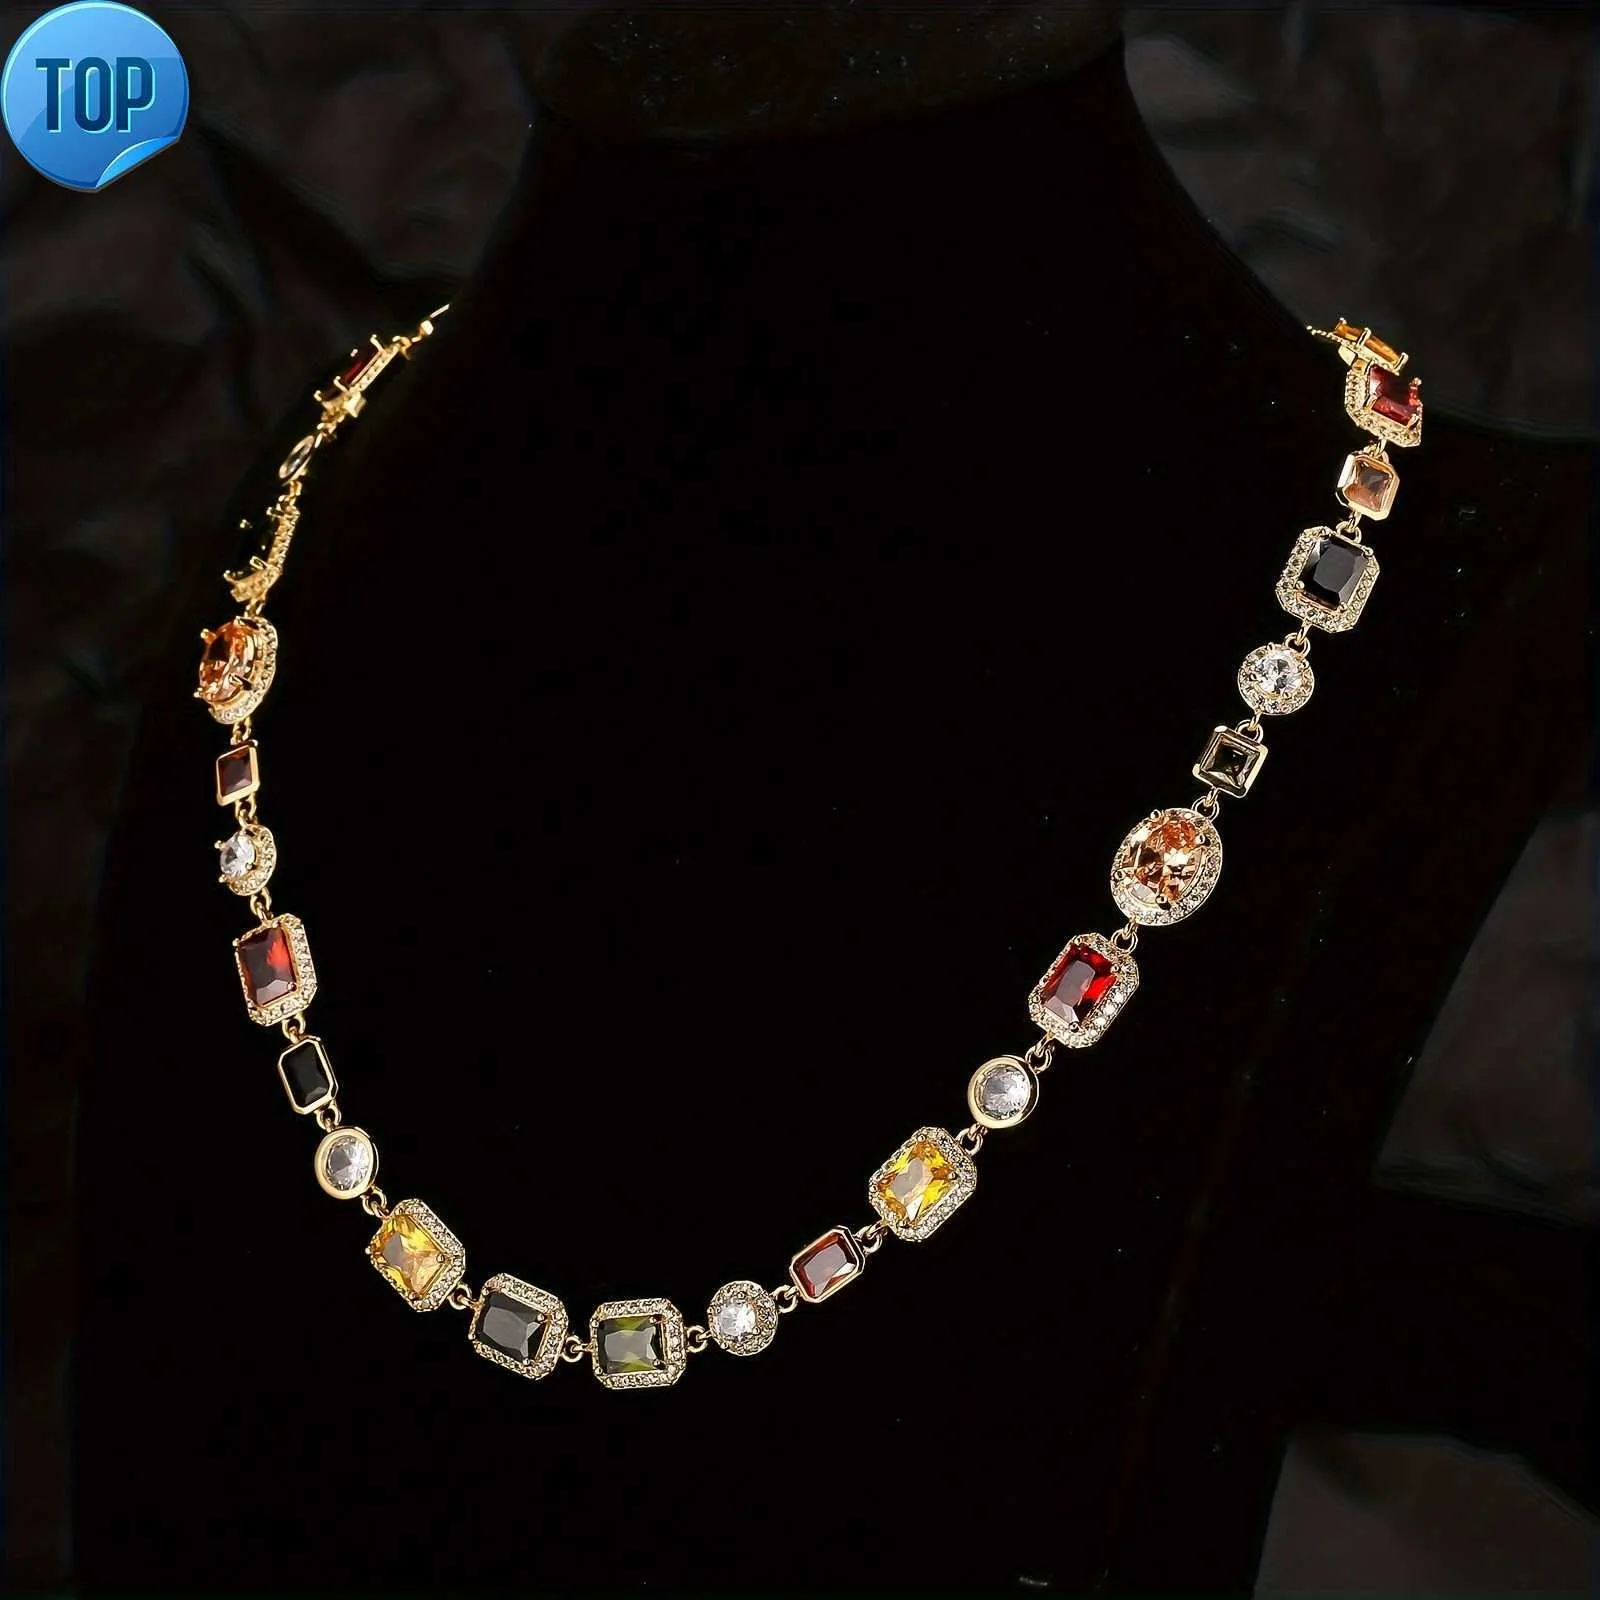 Персонализированная красочная цирконная кокерная цепь хип -хоп винтажный золото, покрытый многоцветным жемчужным камнем камня для мужчин ожерелье для мужчин